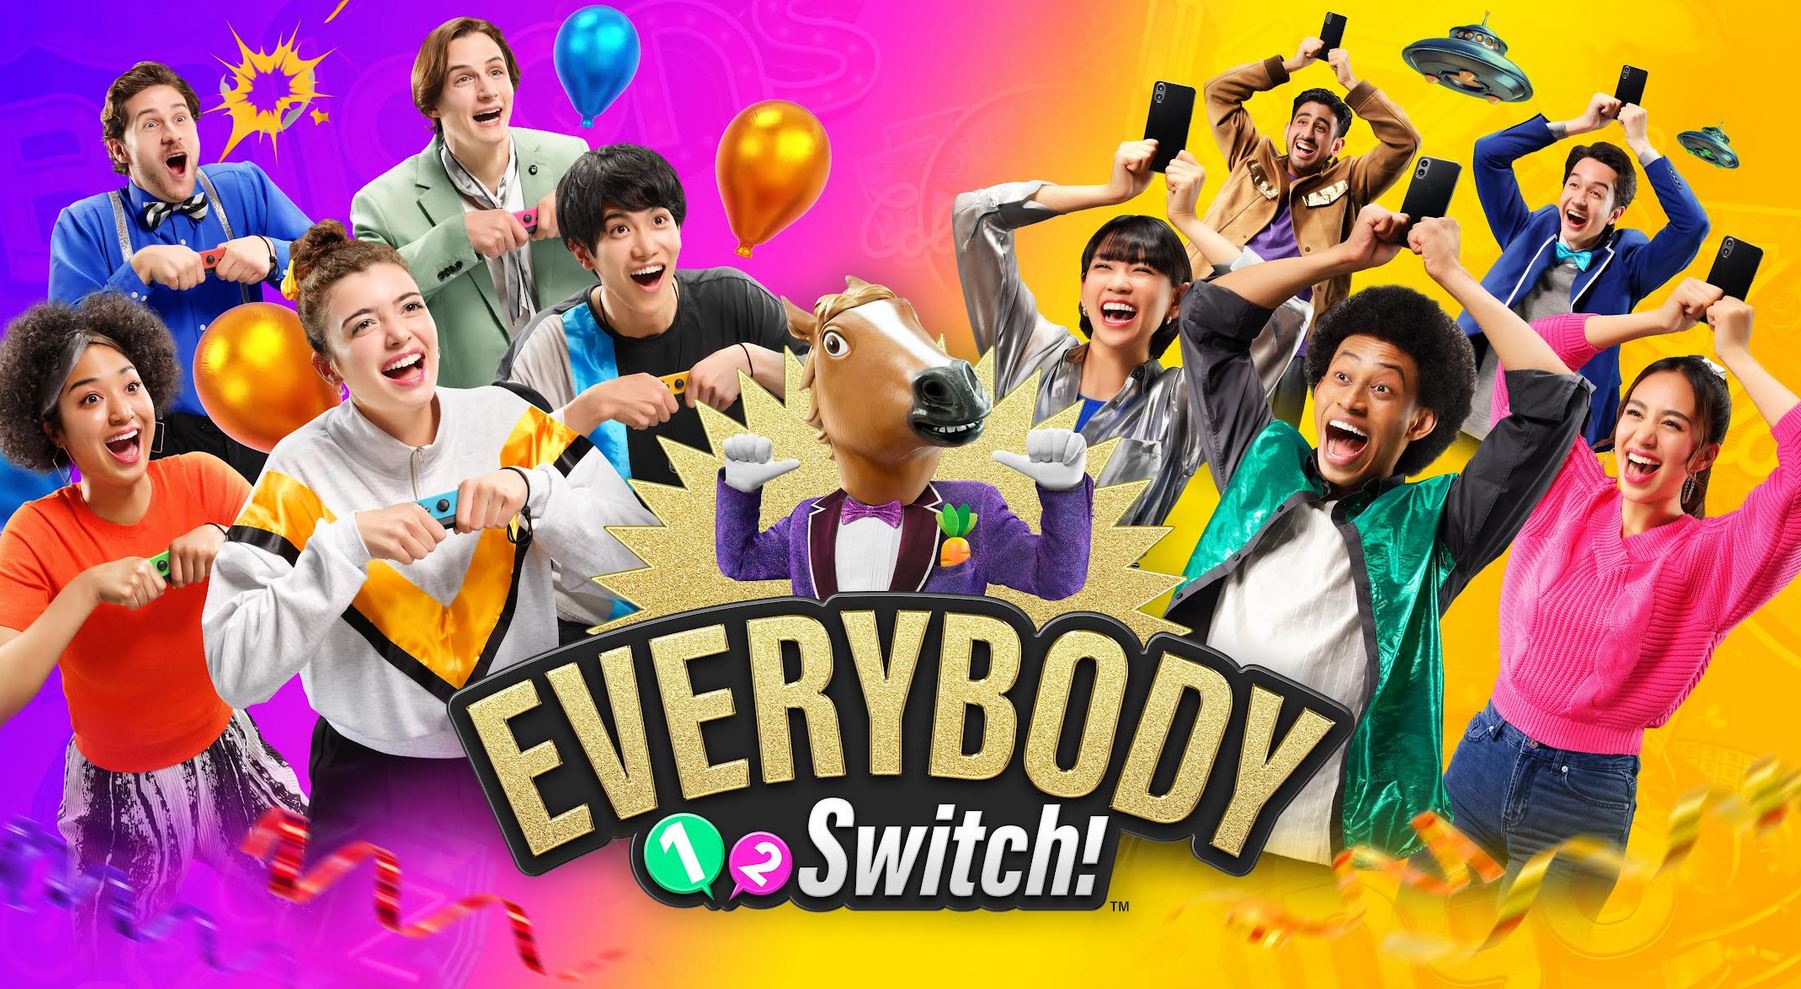 Everybody 1-2-Switch! la festa inizia oggi